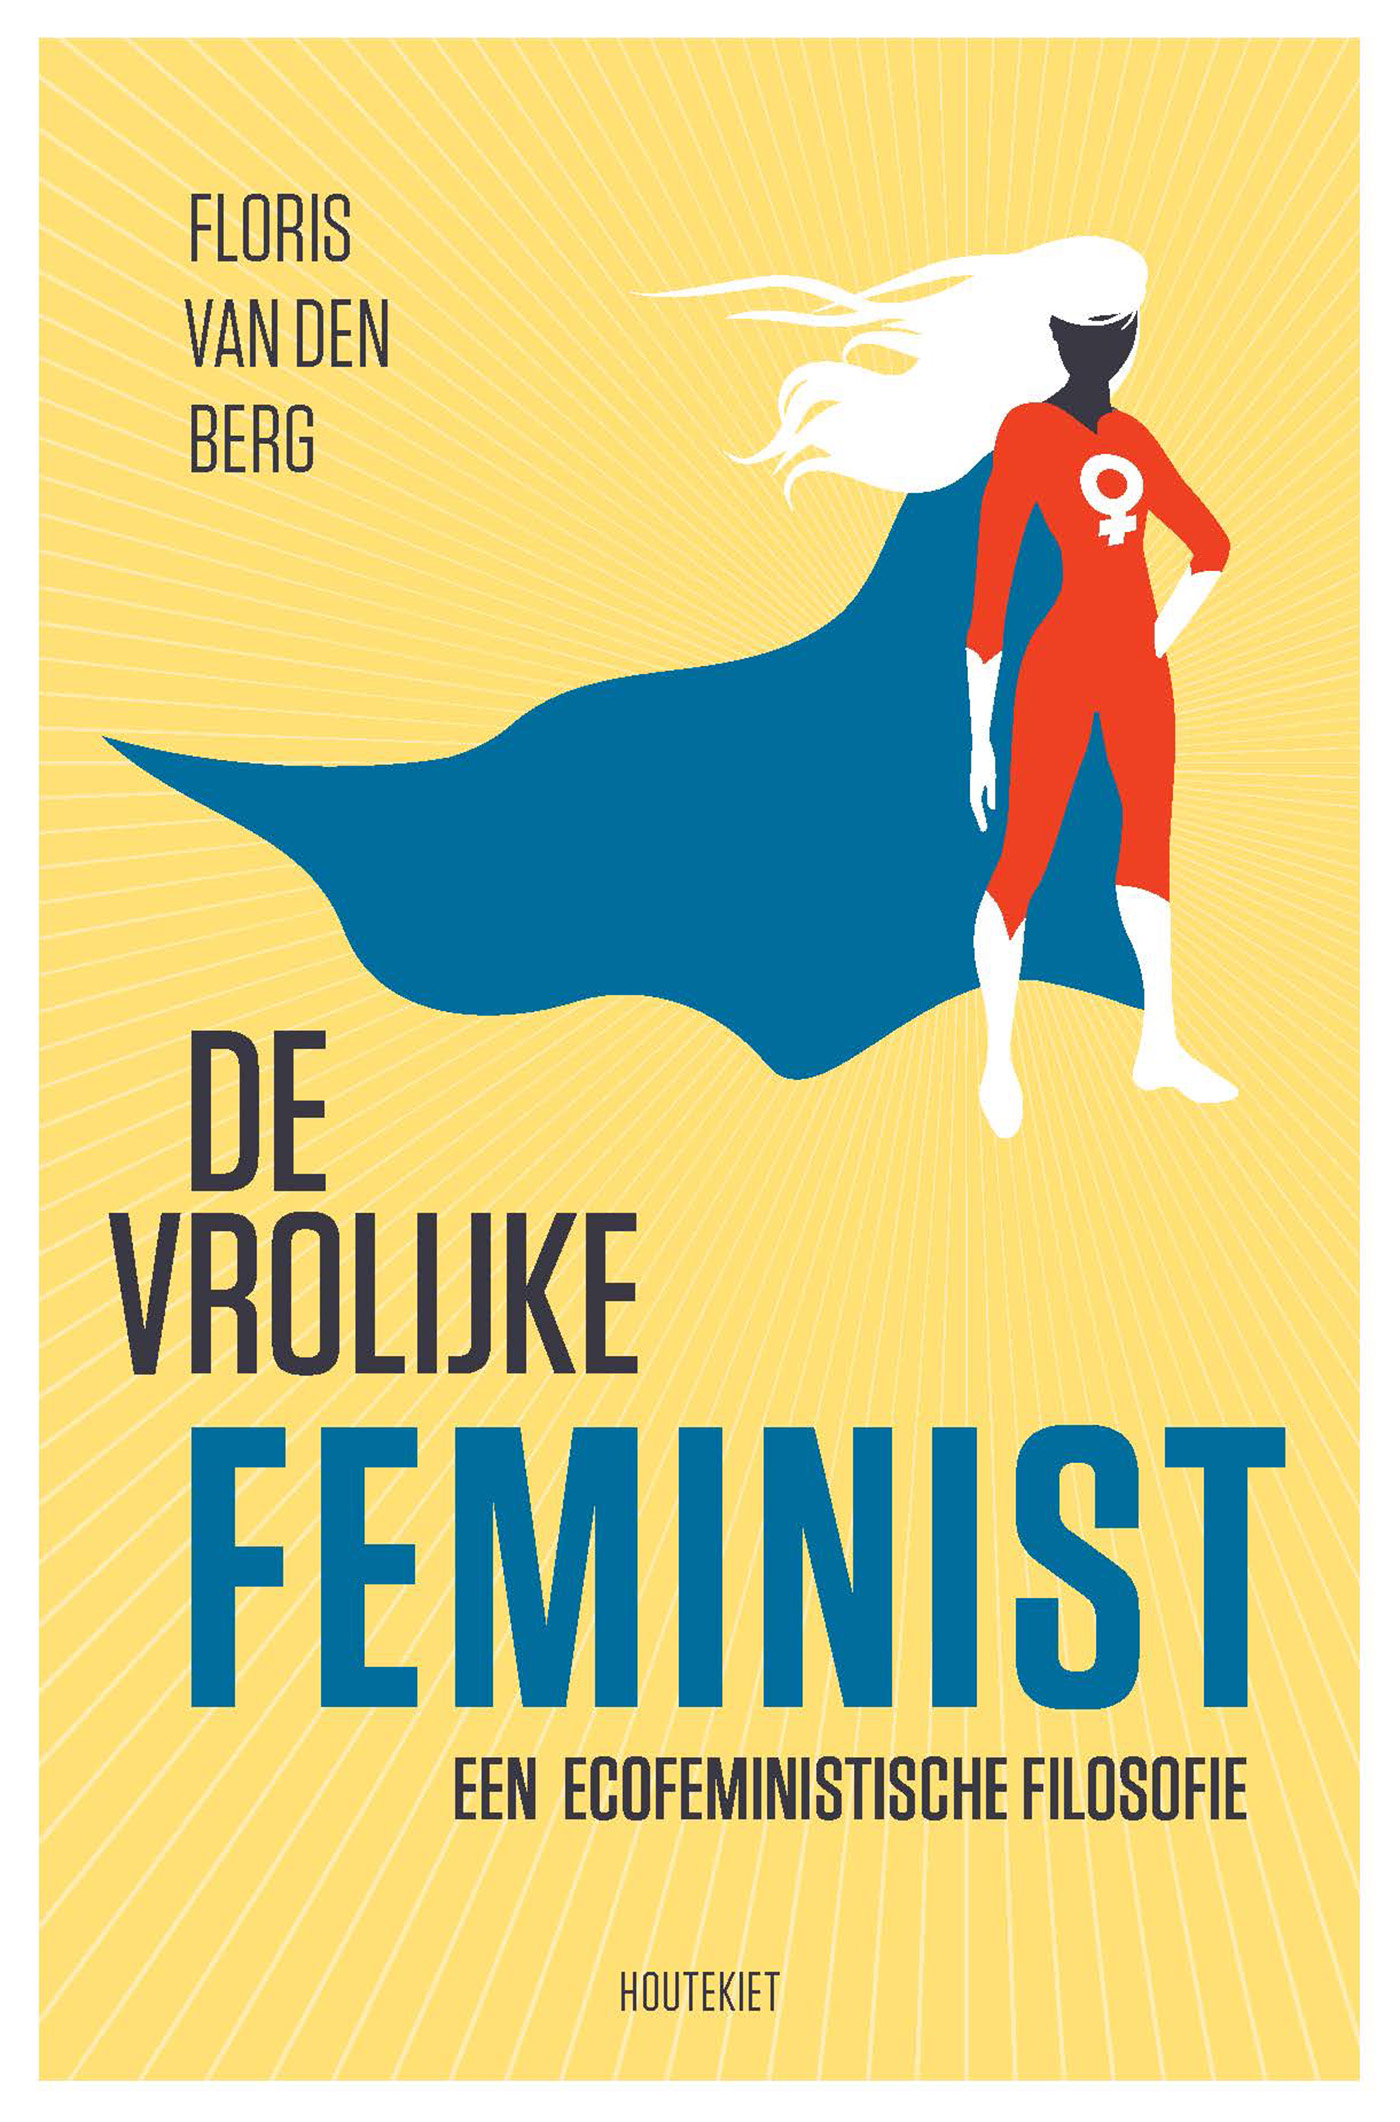 De vrolijke feminist (Ebook)